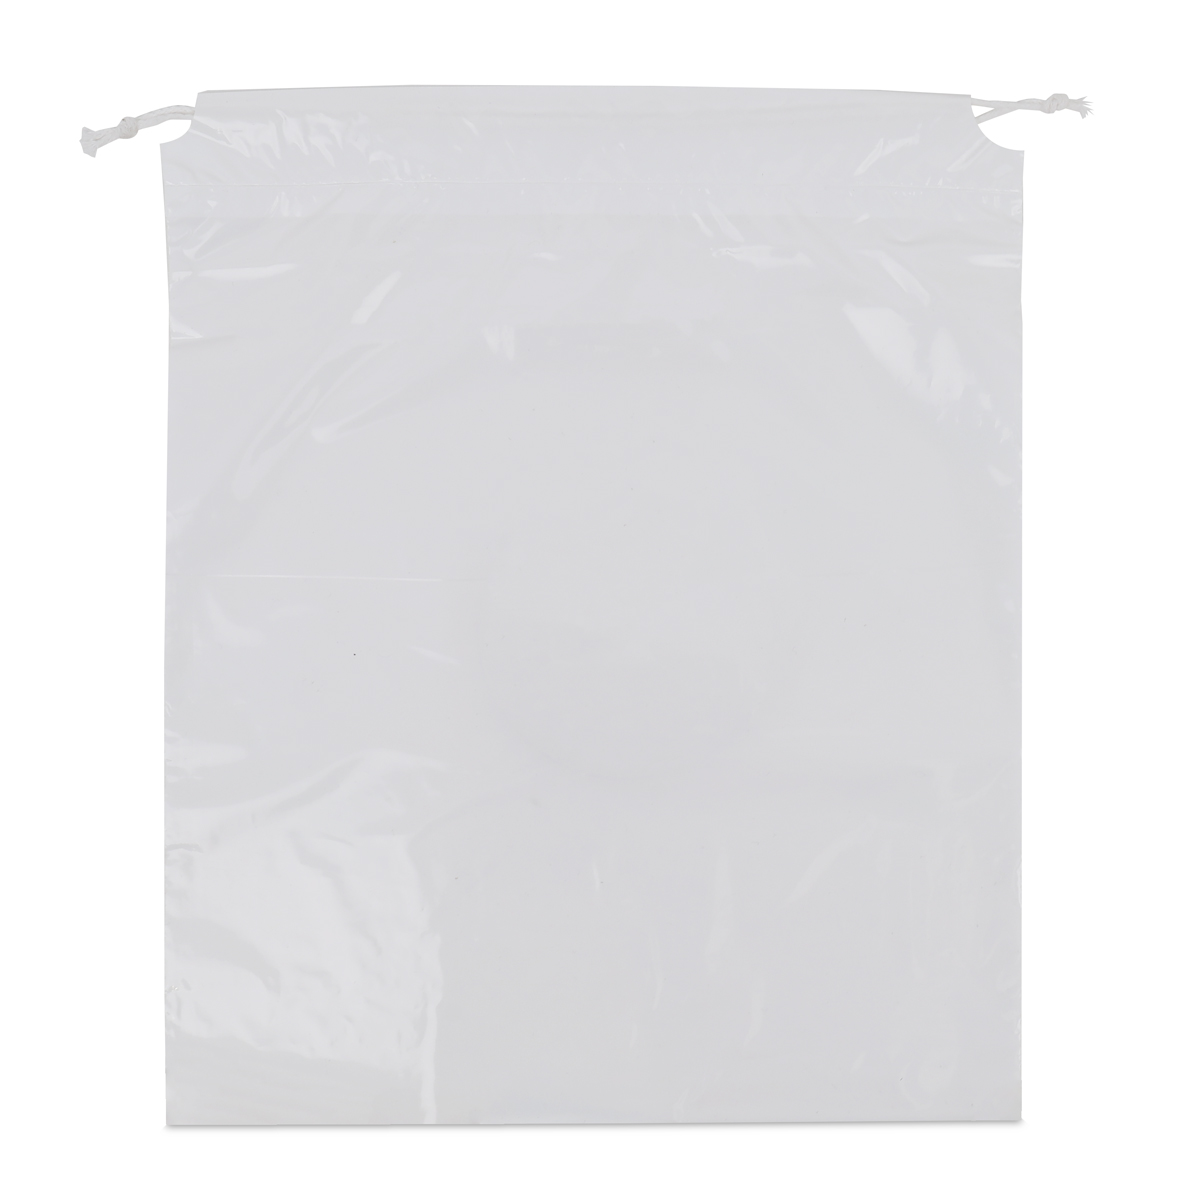 Sacs à linge en plastique (laundry bags) avec cordon de tirage